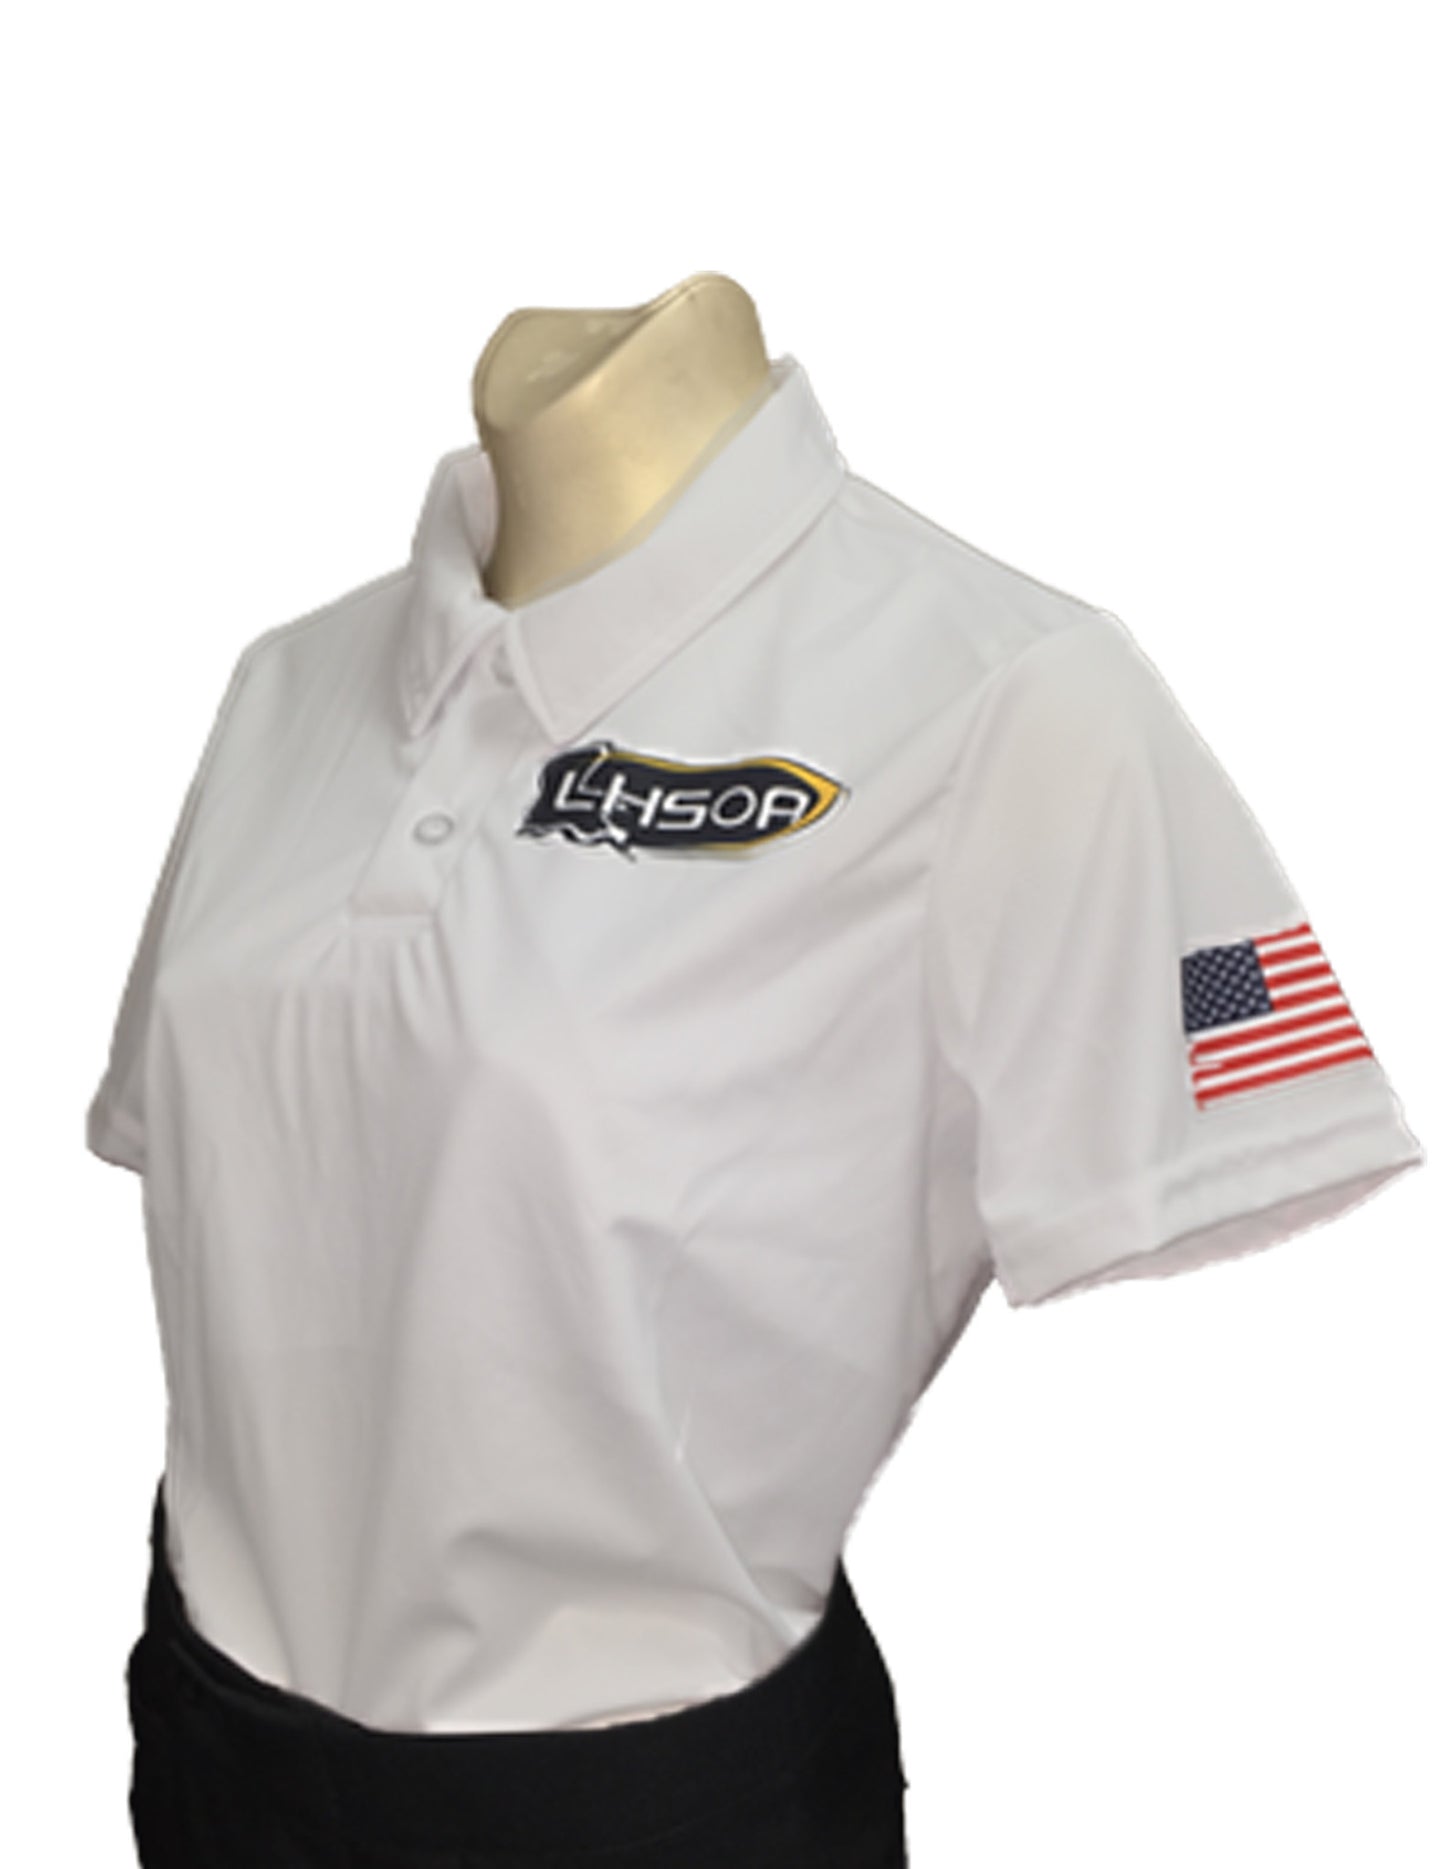 USA457-Women's Dye Sub Louisiana Volleyball Shirt